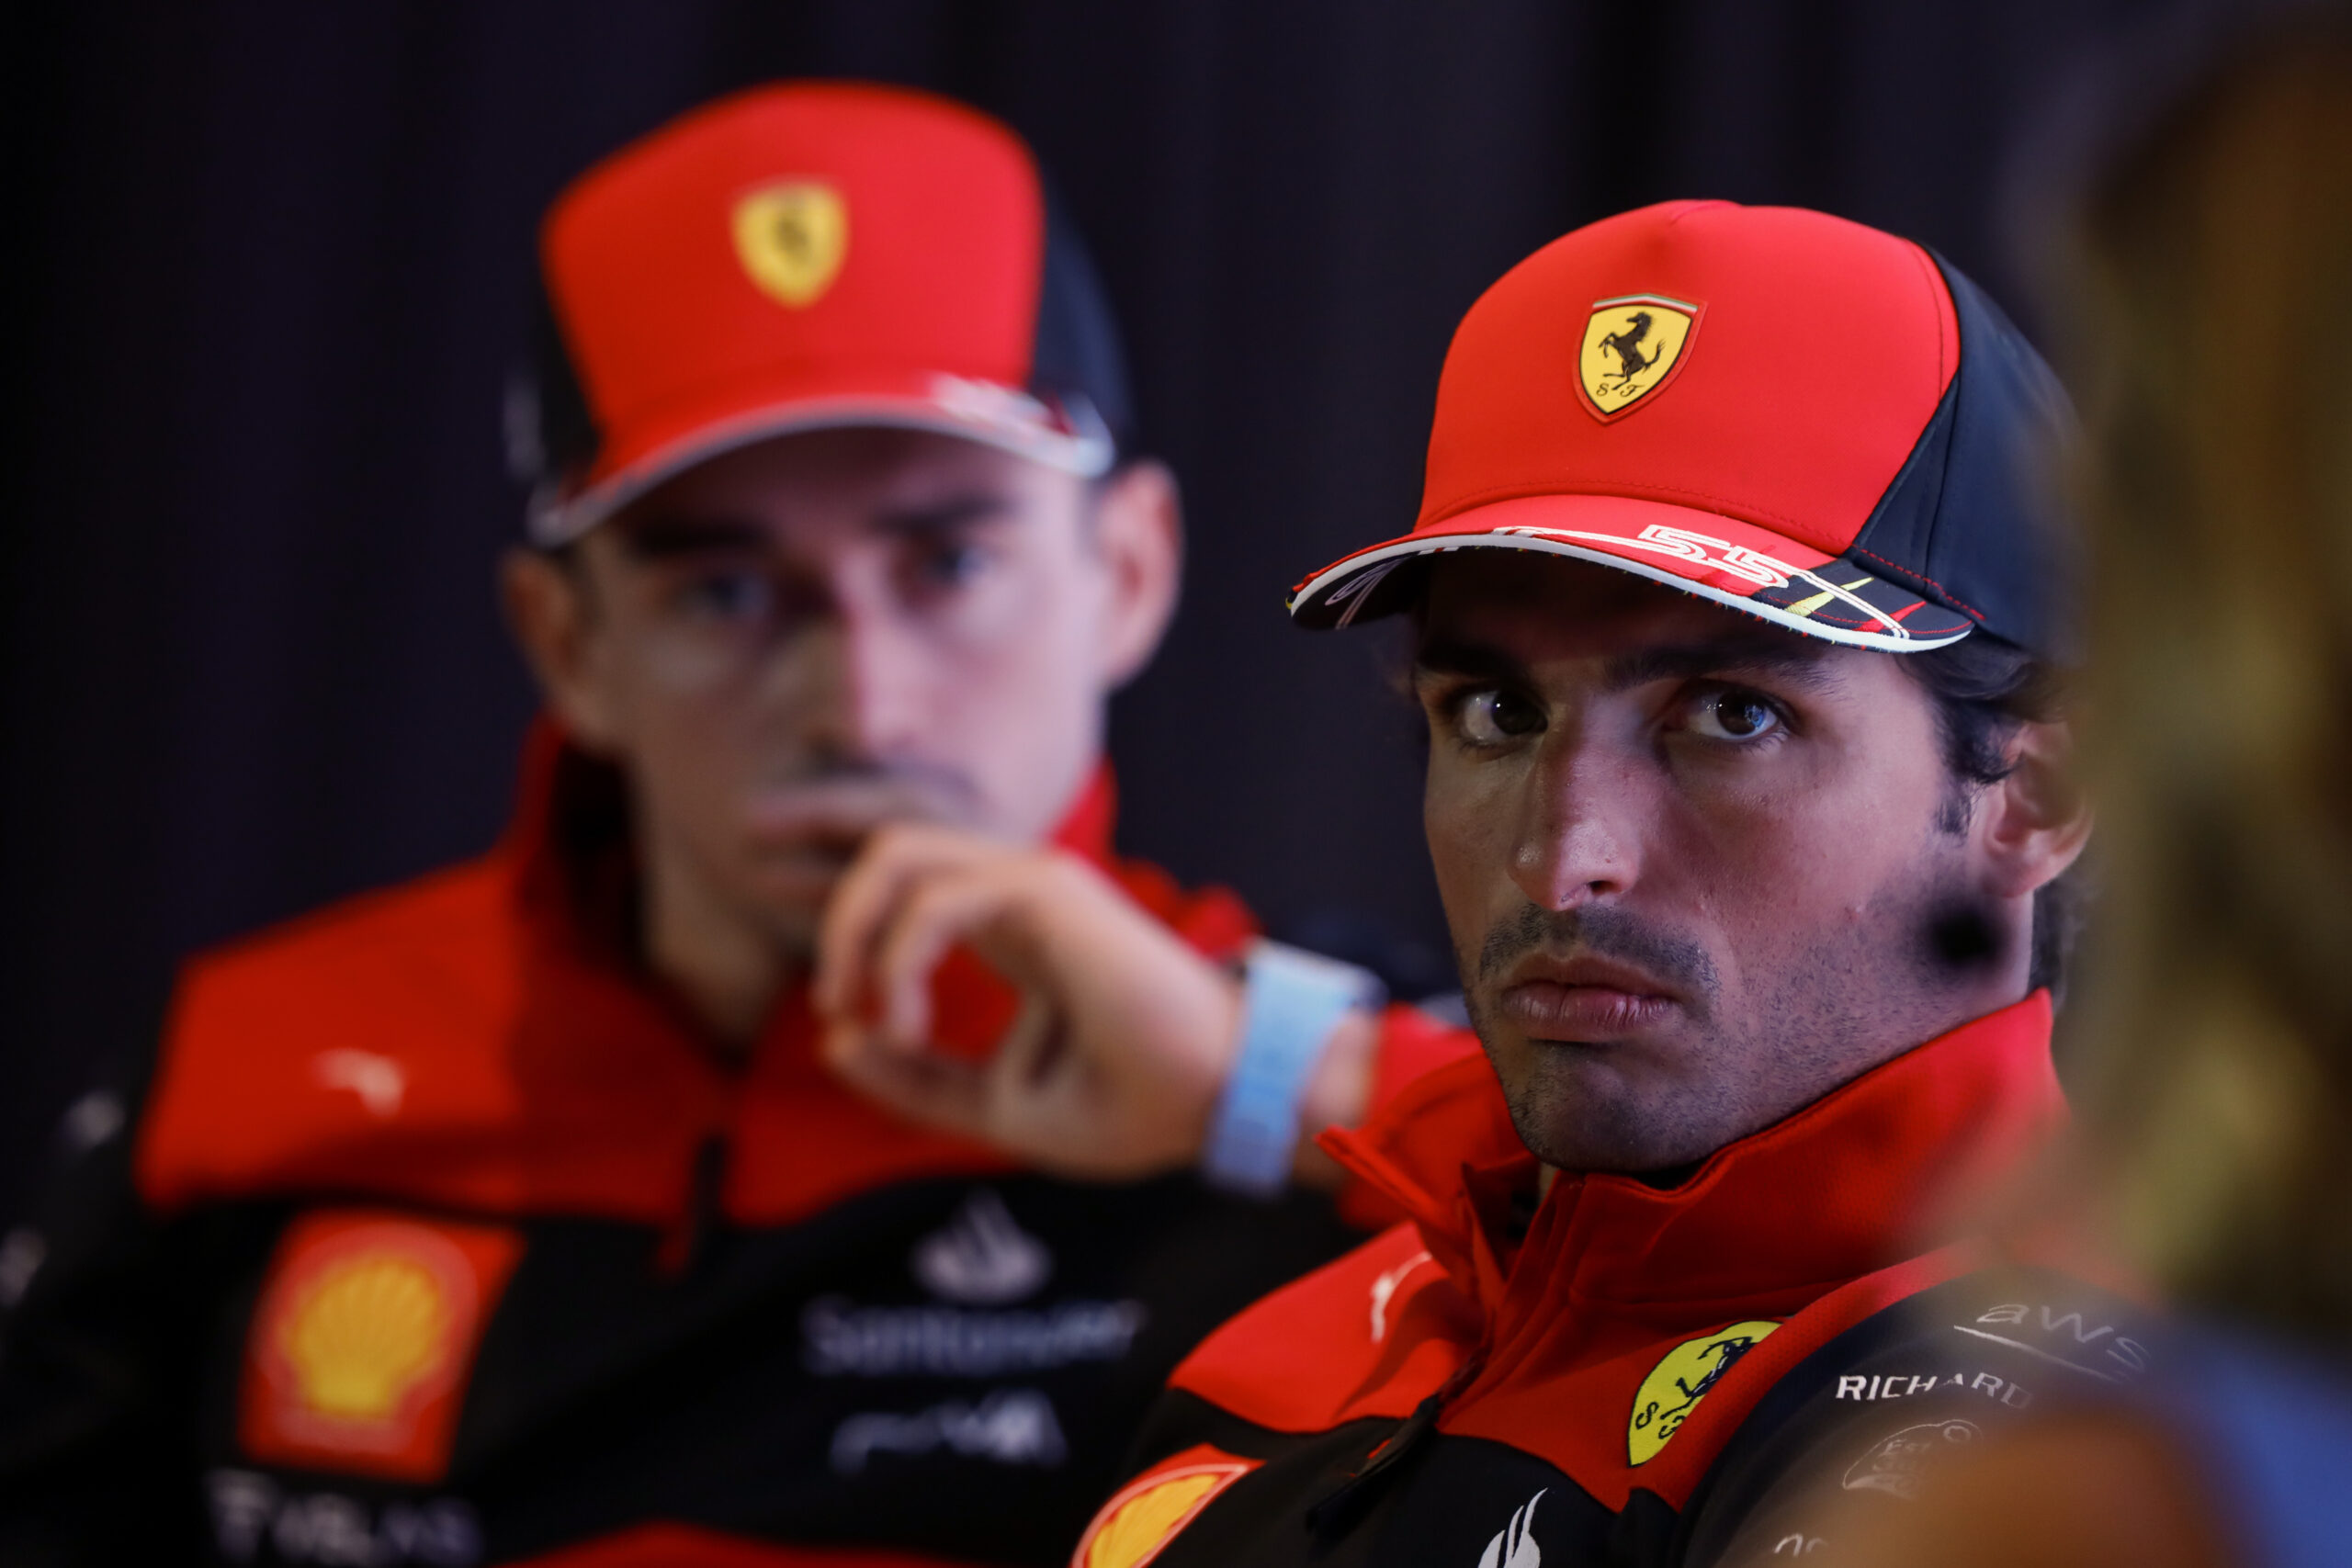 Optimizëm te Ferrari: Imola, pista e duhur për të gëzuar tifozët tanë